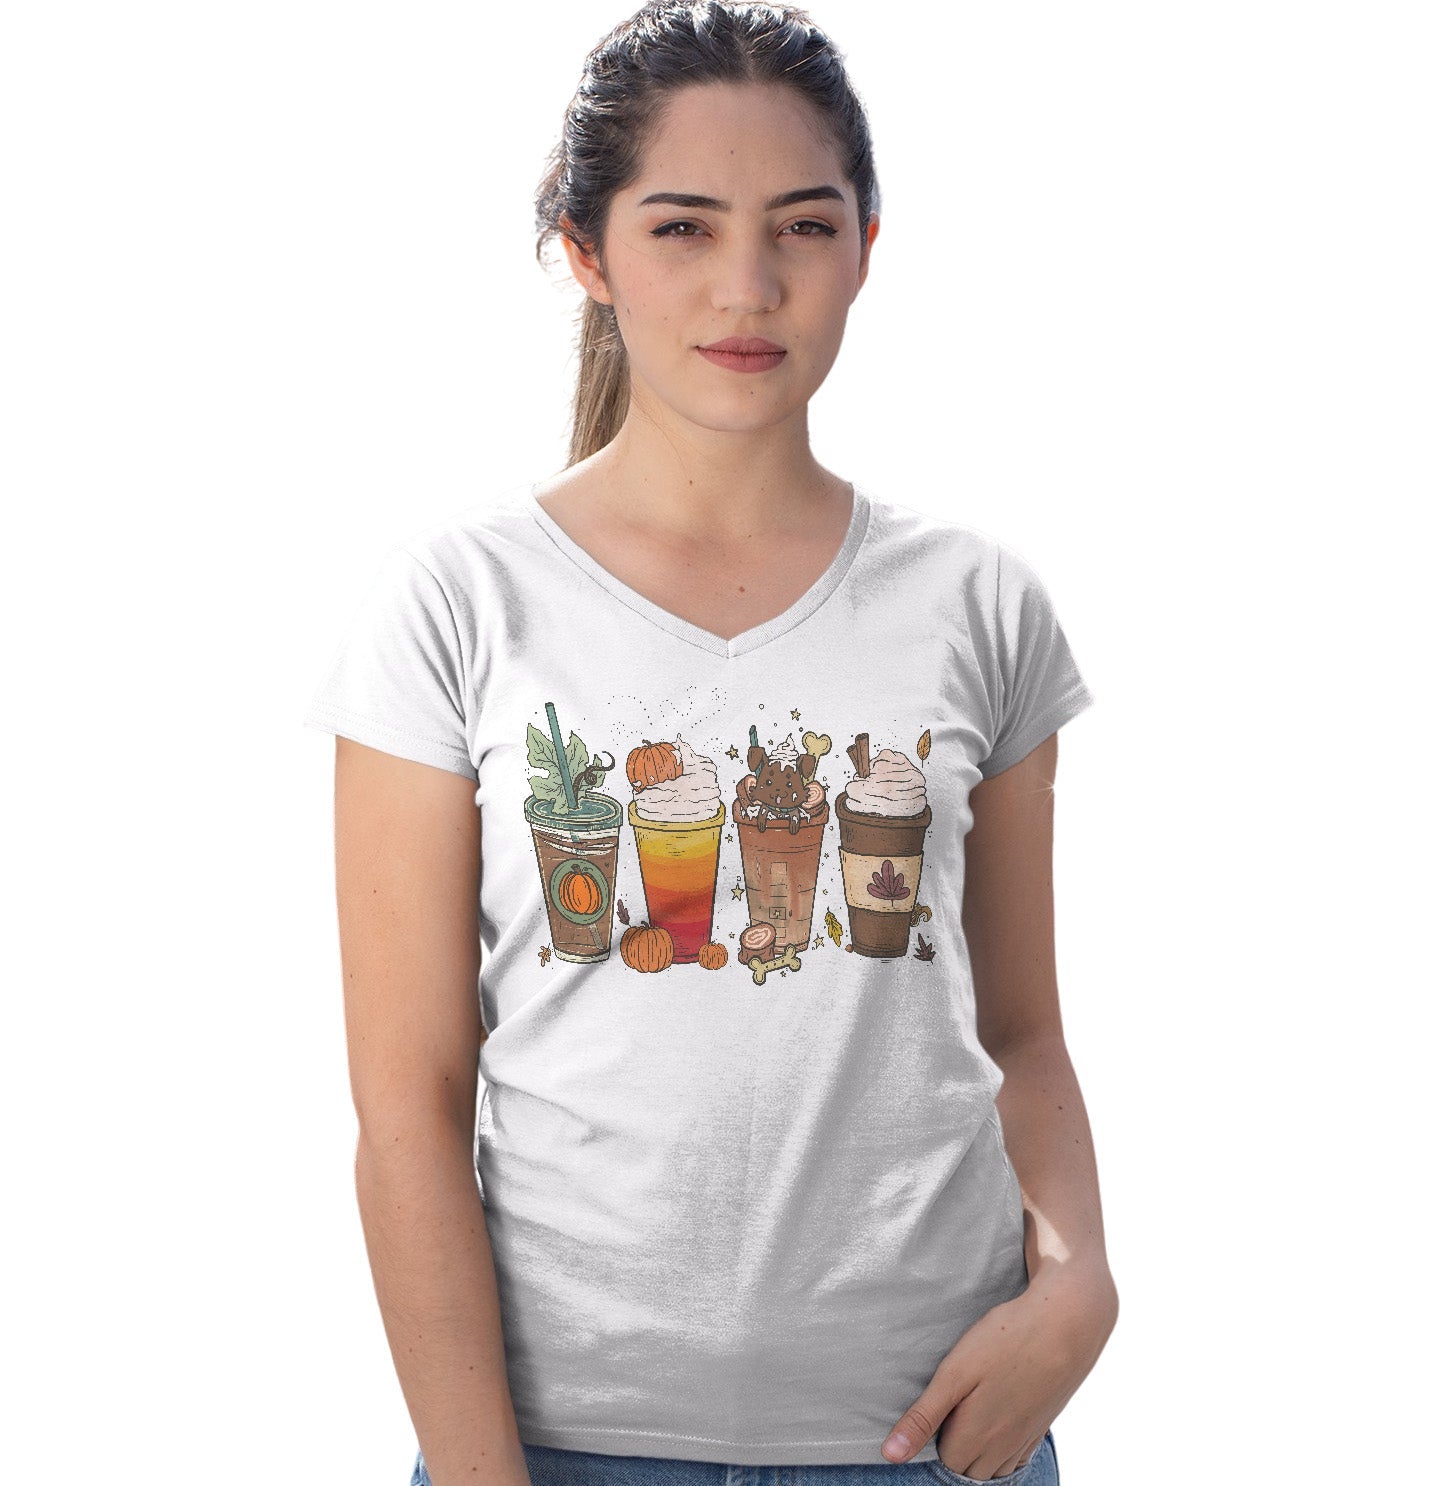 Pupachino Chocolate Lab - Women's V-Neck T-Shirt